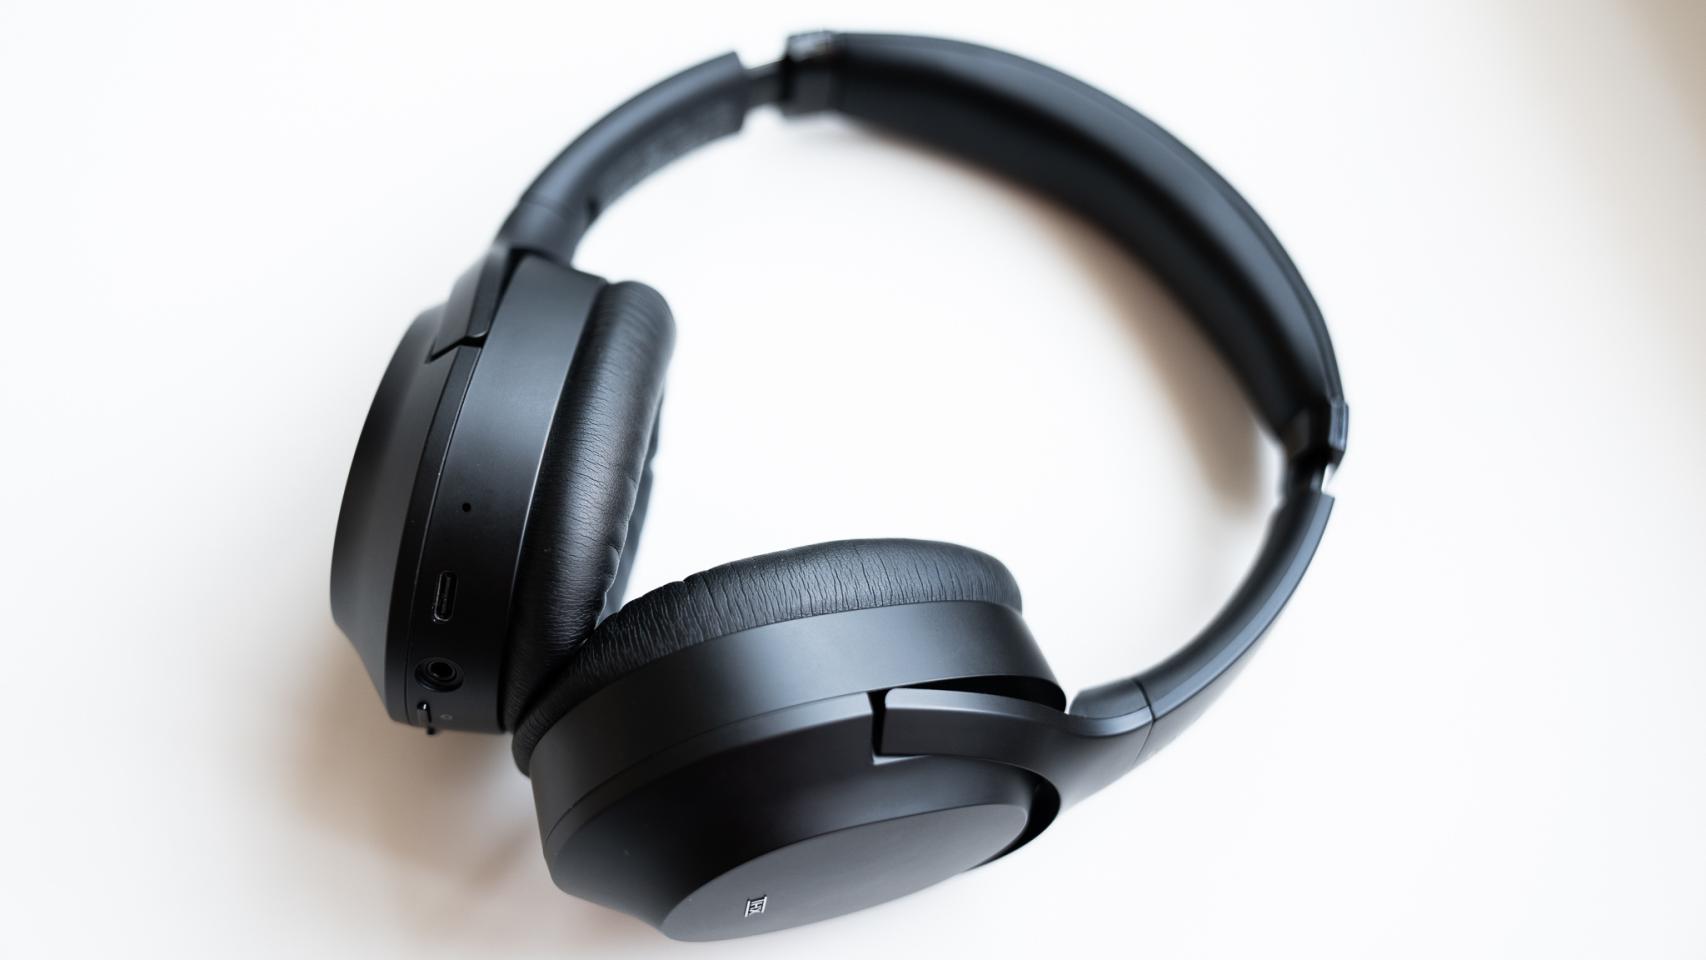 Sonido envolvente, cómodos y ligeros: estos auriculares Razer vuelven a  rozar su precio mínimo histórico